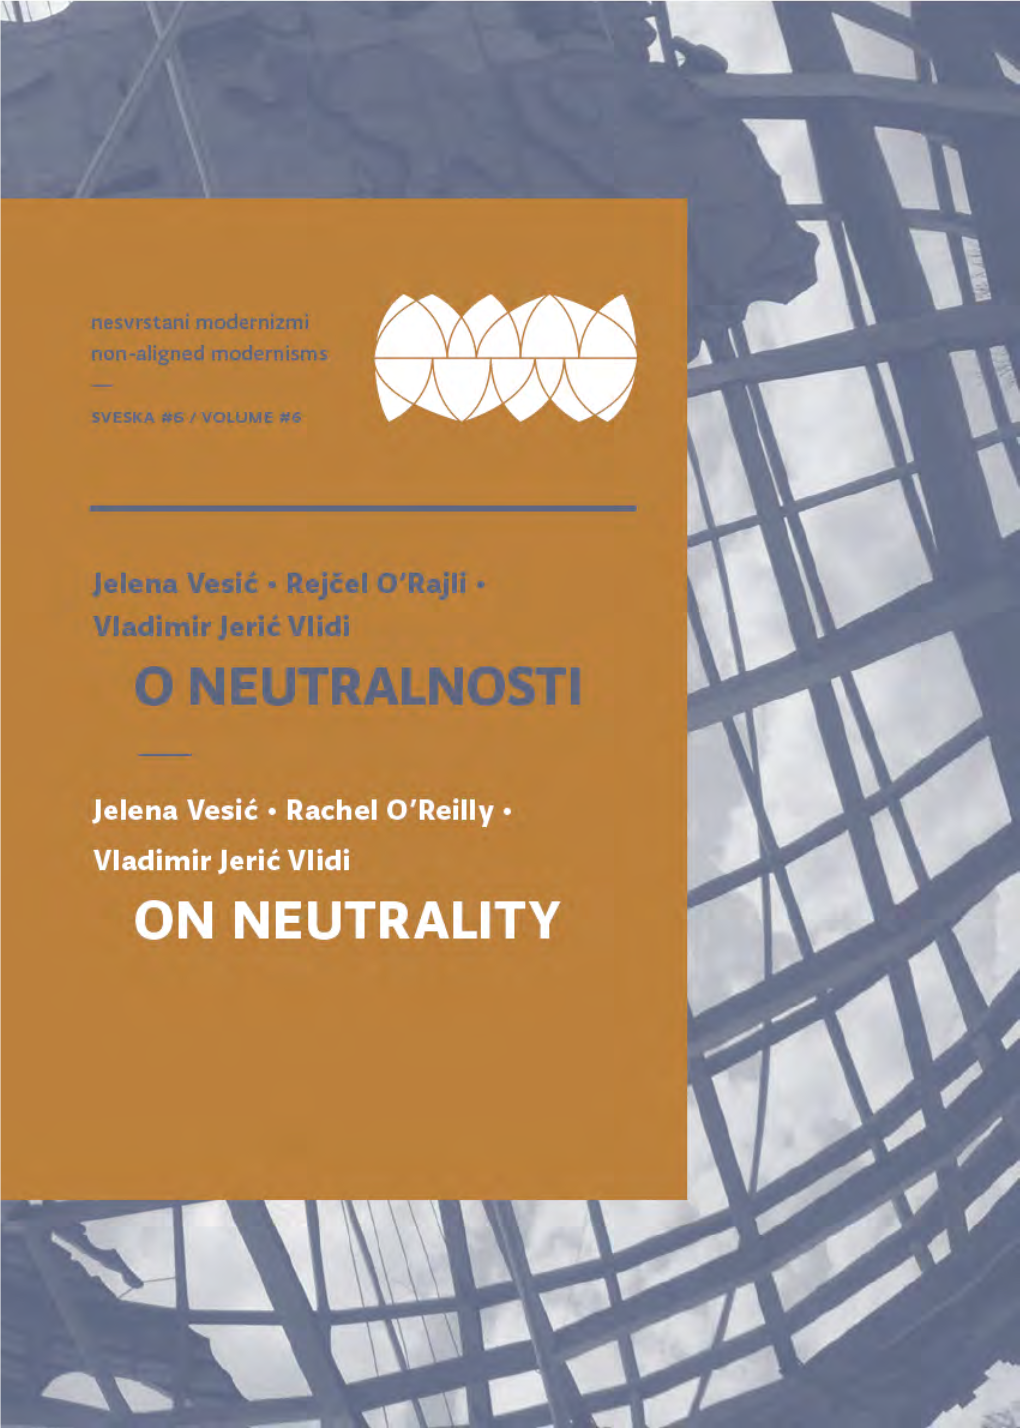 “On Neutrality” (With Jelena Vesić and Rachel O'reilly